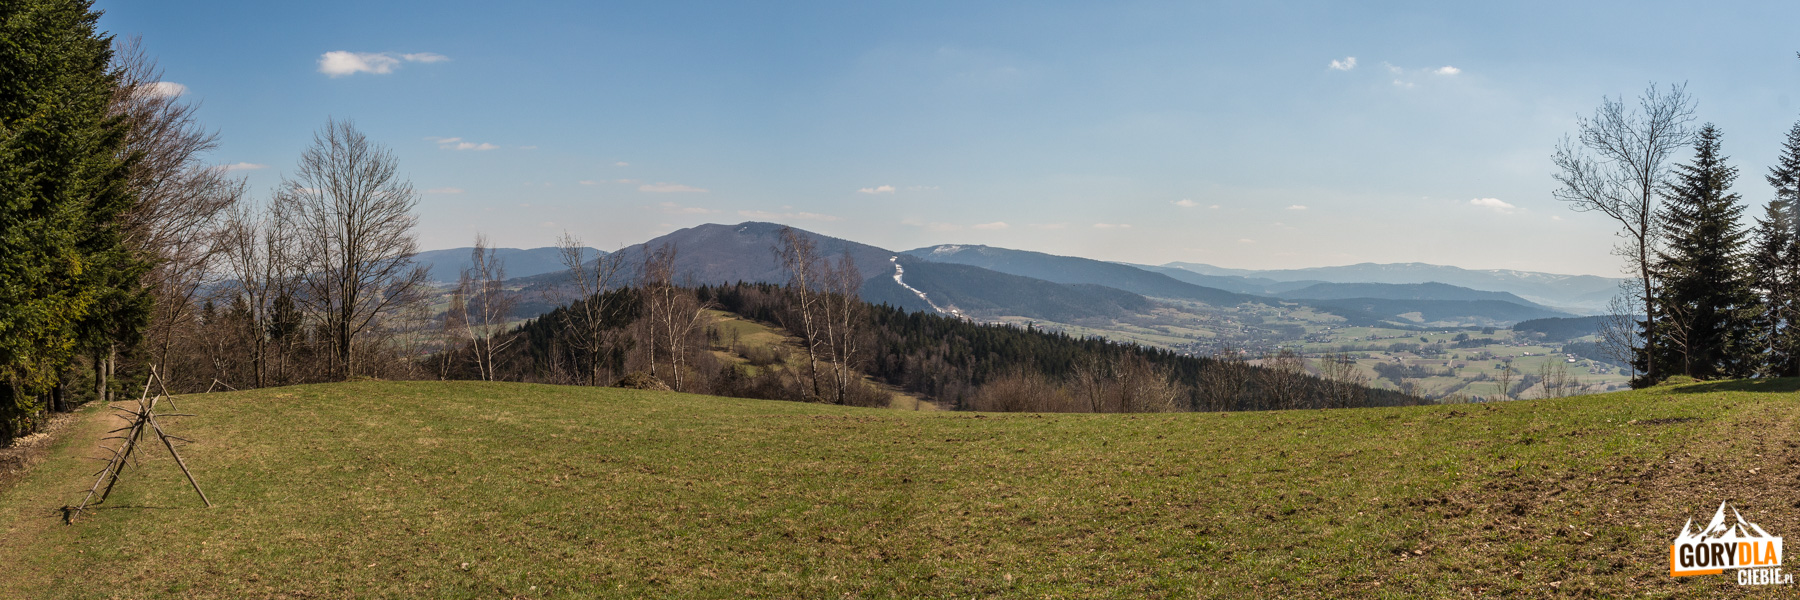 Widok spod szczytu Wierzbanowskiej Góry na Beskid Wyspowy i Gorce